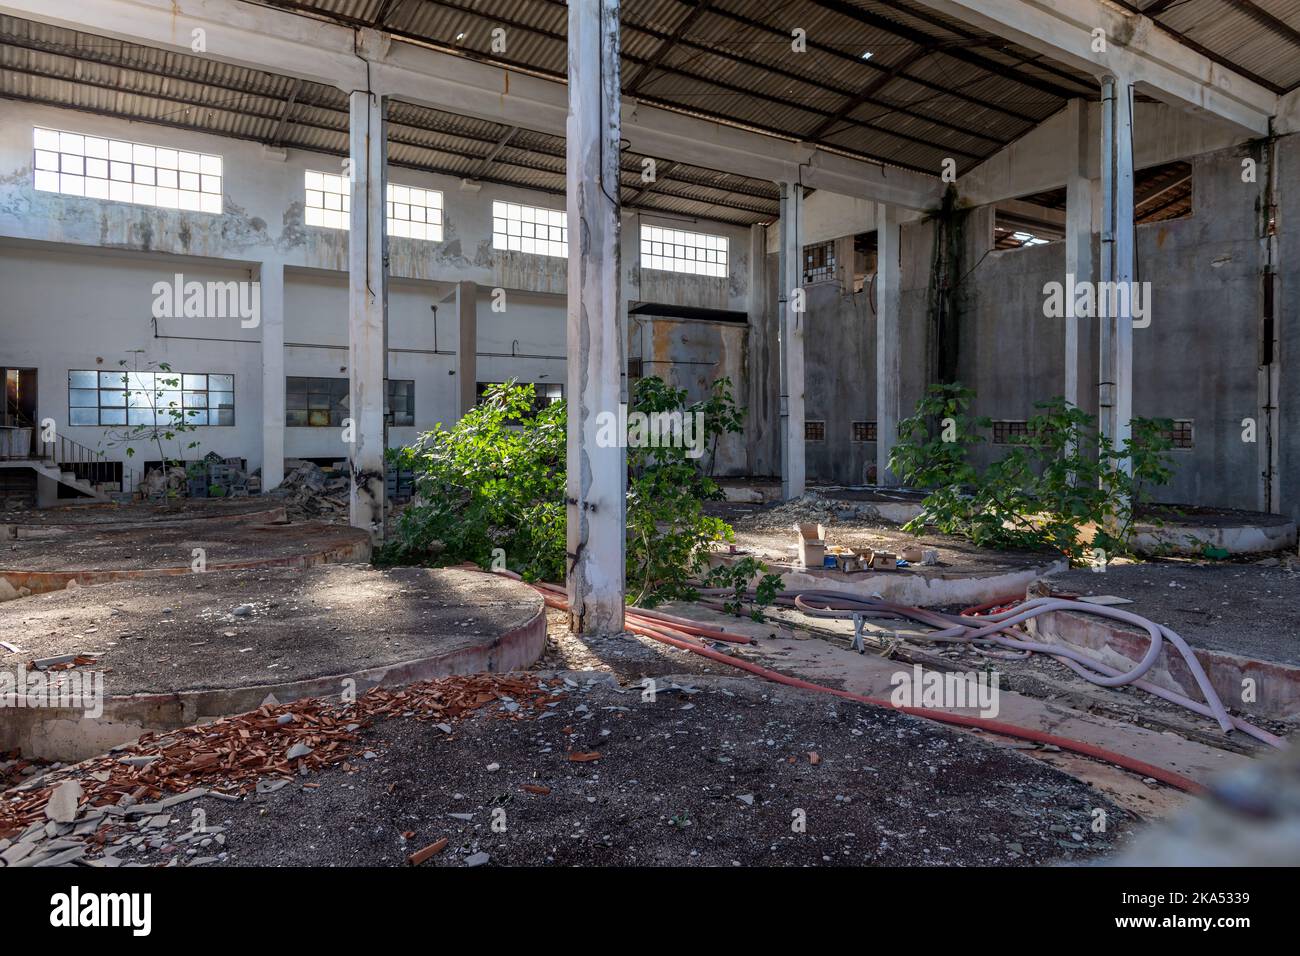 Innenansicht eines verlassenen, verlassenen Fabrikgebäudes mit Pflanzen, die im Inneren wachsen. Stockfoto